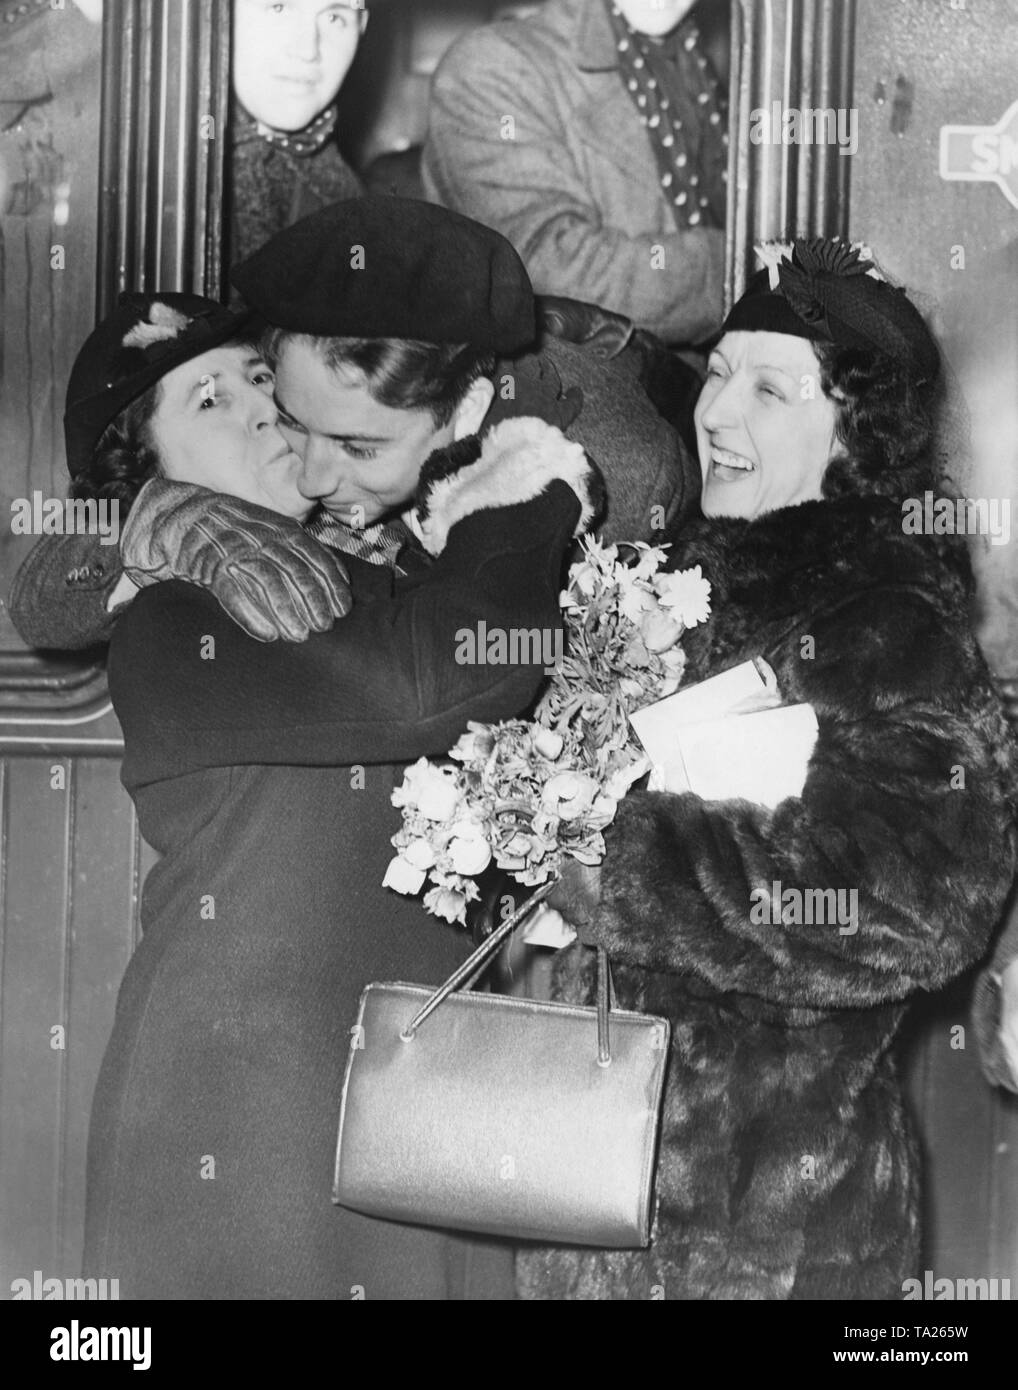 Foto eines freiwilligen Republikanischen Kämpfer des Bürgerkrieges, der von zwei Frauen an der Victoria Station in London nach ihrer Rückkehr aus dem Spanischen Bürgerkrieg am 7 Dezember, 1938 geküsst wird. Die 400 Kämpfer der Internationalen Brigaden am Bahnhof von einer Menschenmenge und sozialistischen Beamten erhalten. Stockfoto